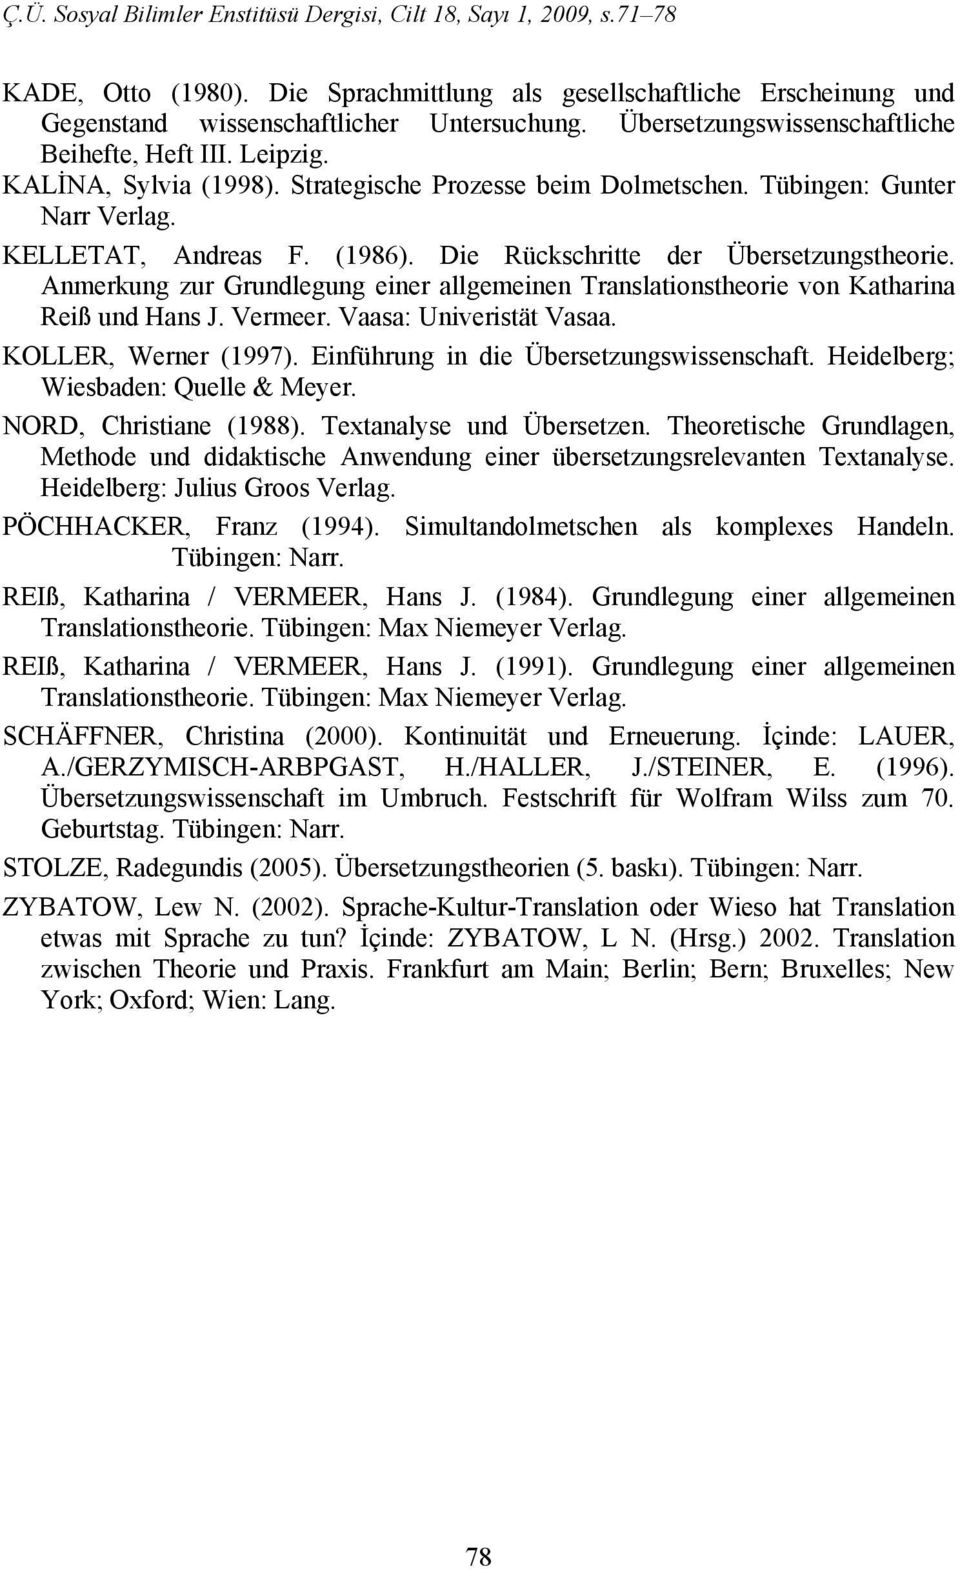 Anmerkung zur Grundlegung einer allgemeinen Translationstheorie von Katharina Reiß und Hans J. Vermeer. Vaasa: Univeristät Vasaa. KOLLER, Werner (1997). Einführung in die Übersetzungswissenschaft.